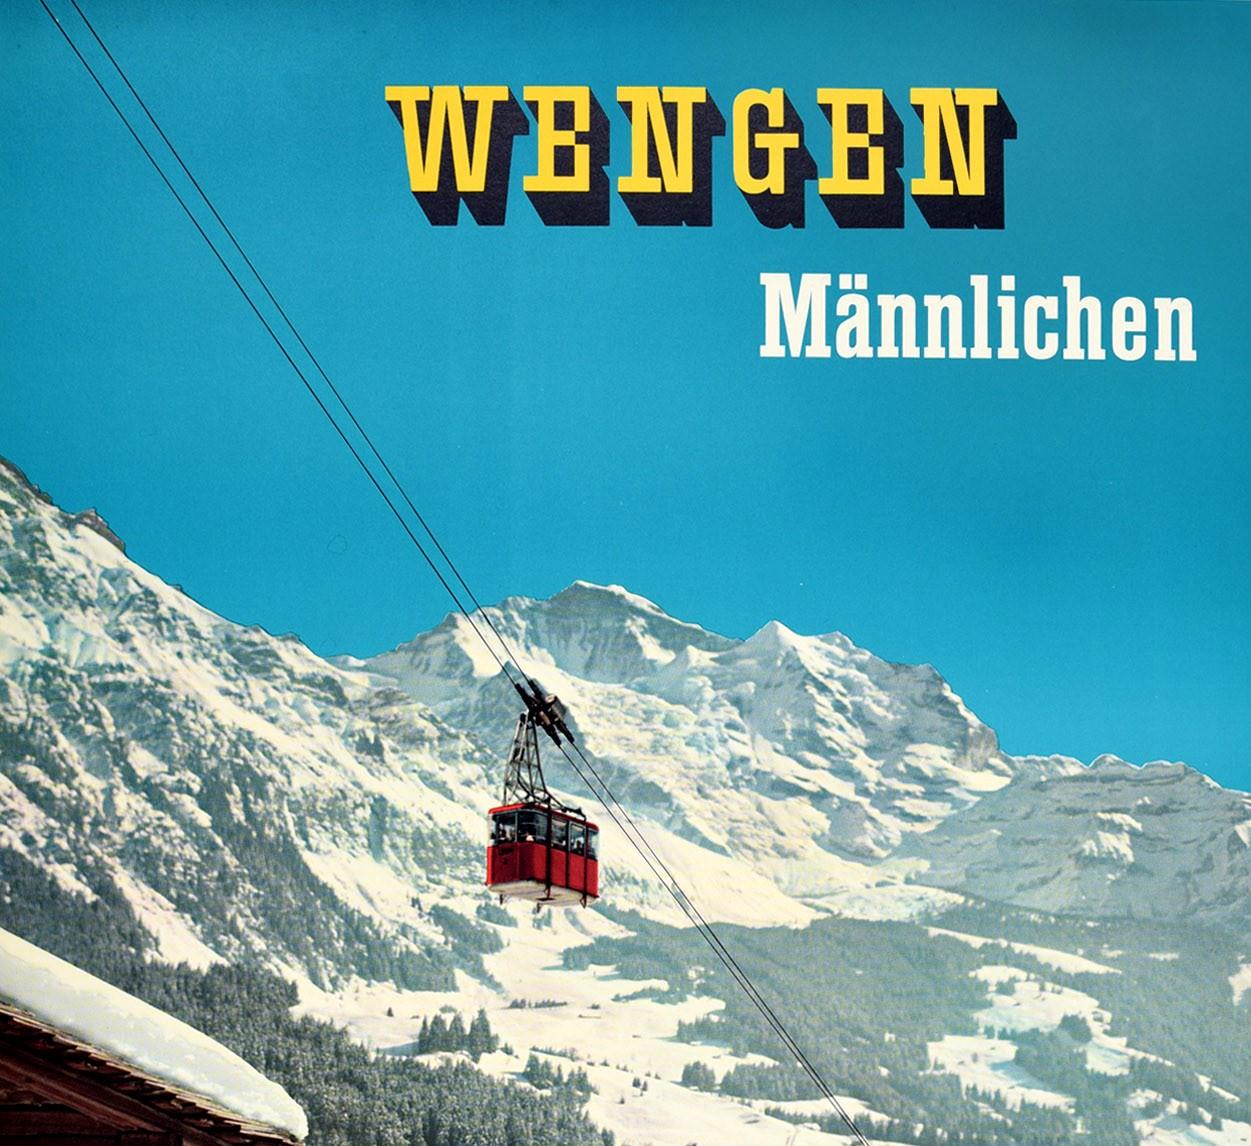 Original Vintage Poster Wengen Mannlichen Mountains Swiss Alps Ski Winter Sport - Print by A Baumann